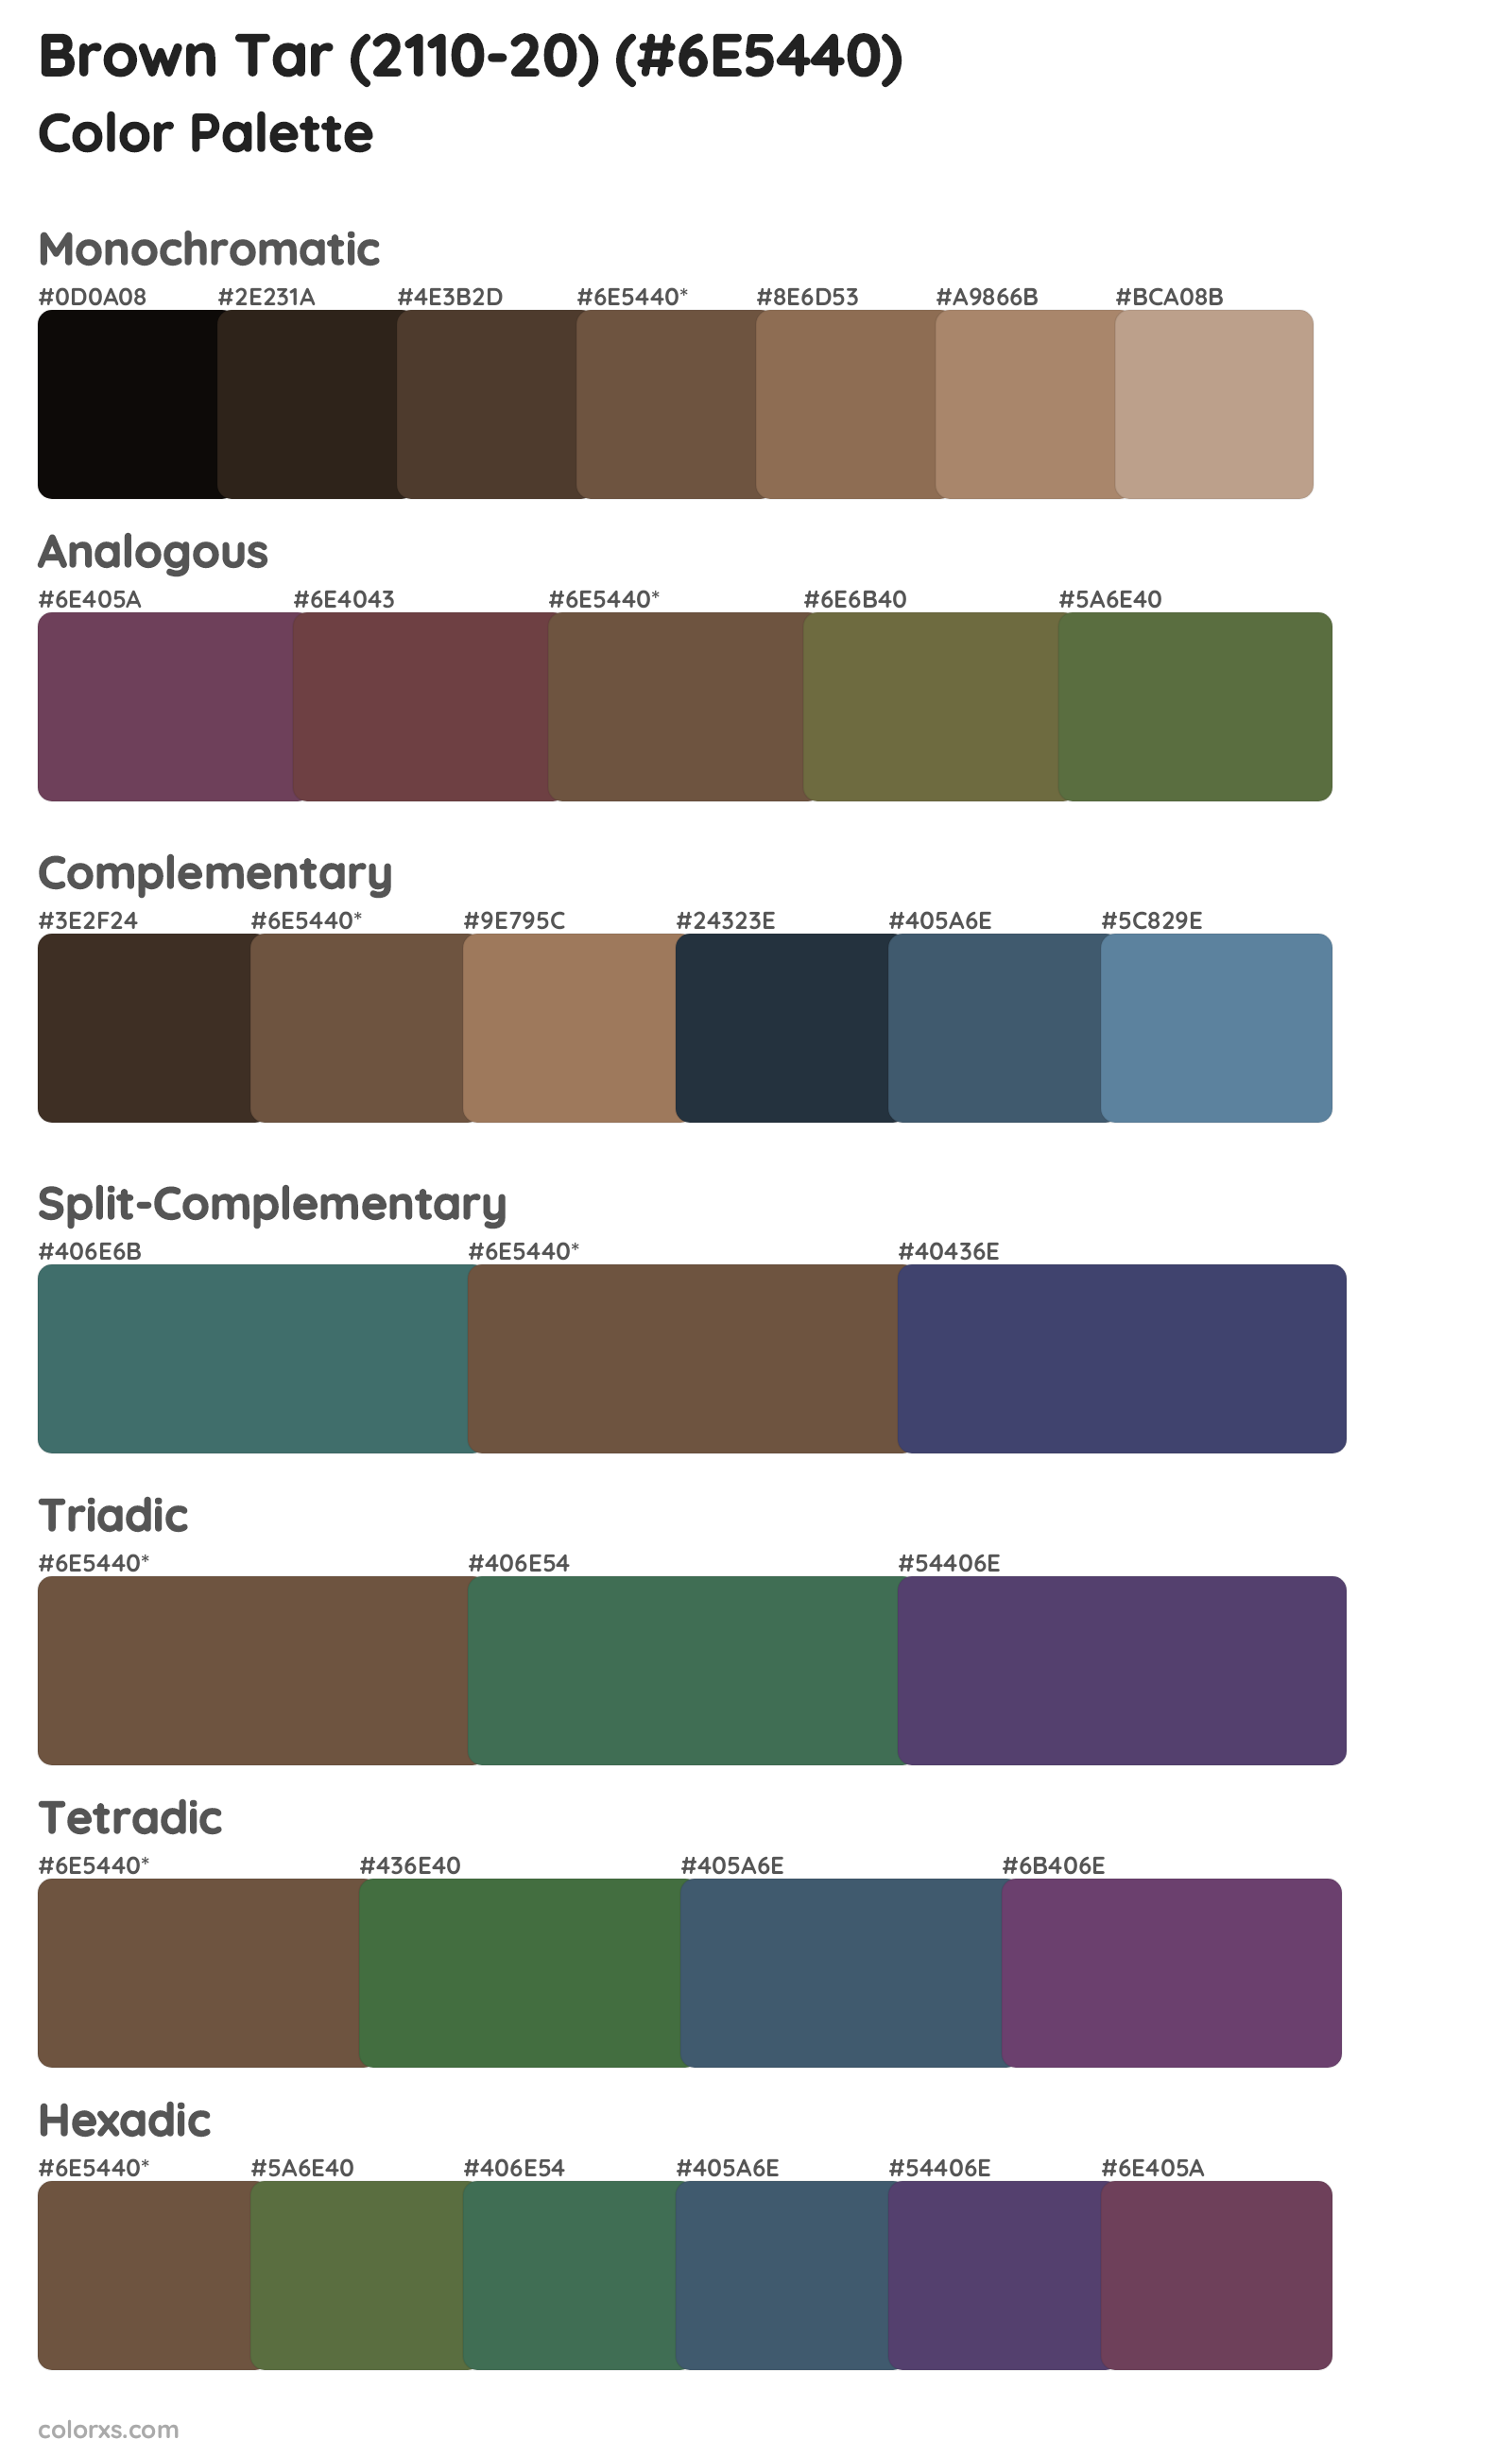 Brown Tar (2110-20) Color Scheme Palettes